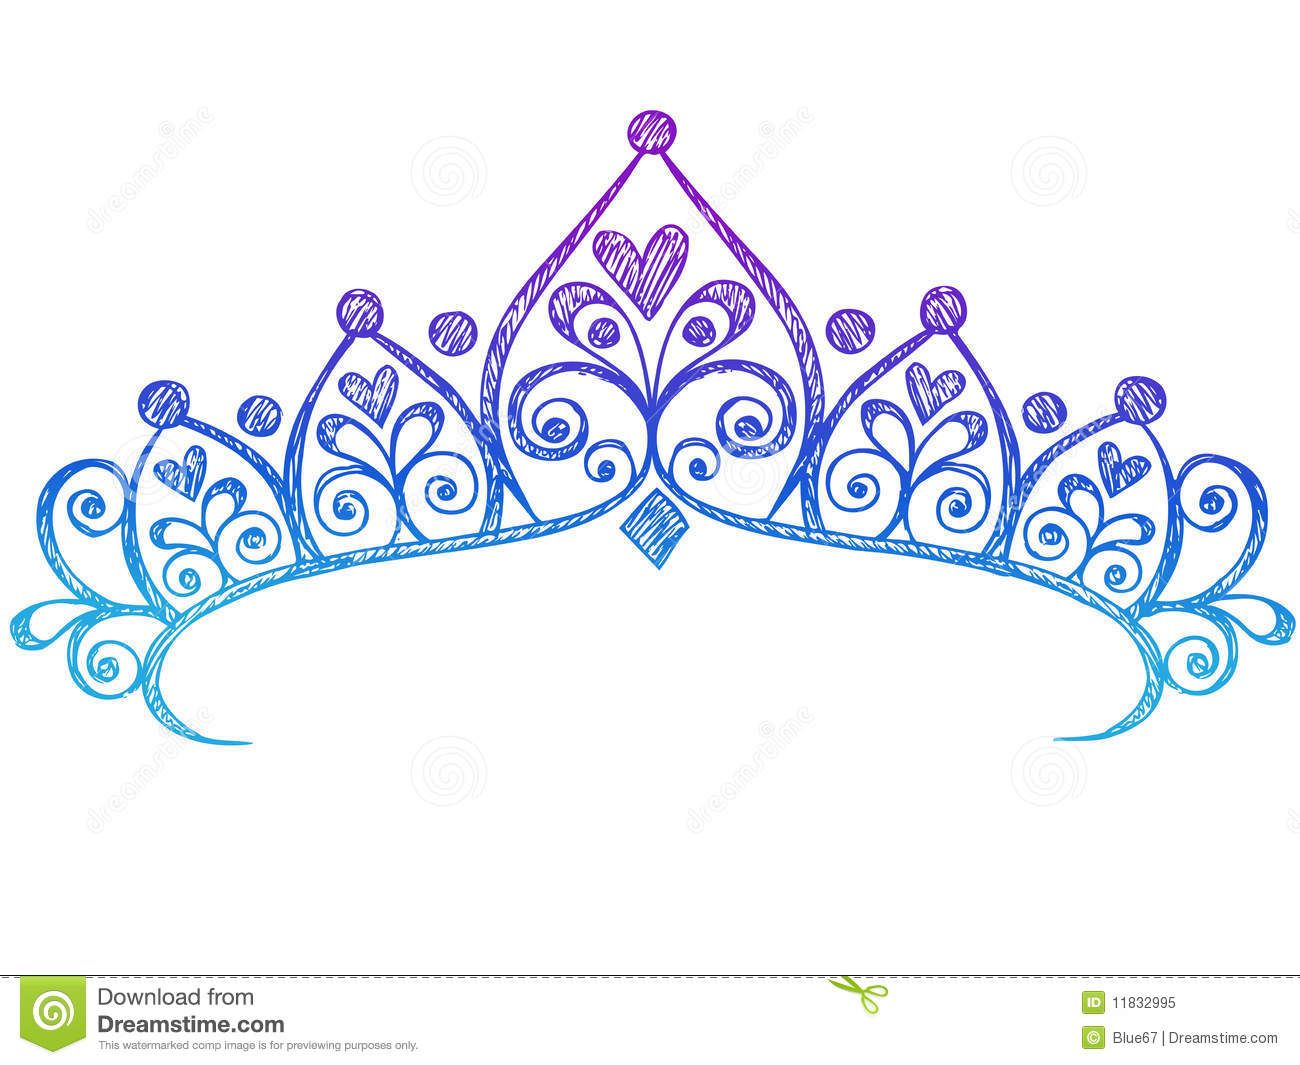 belle clipart crown